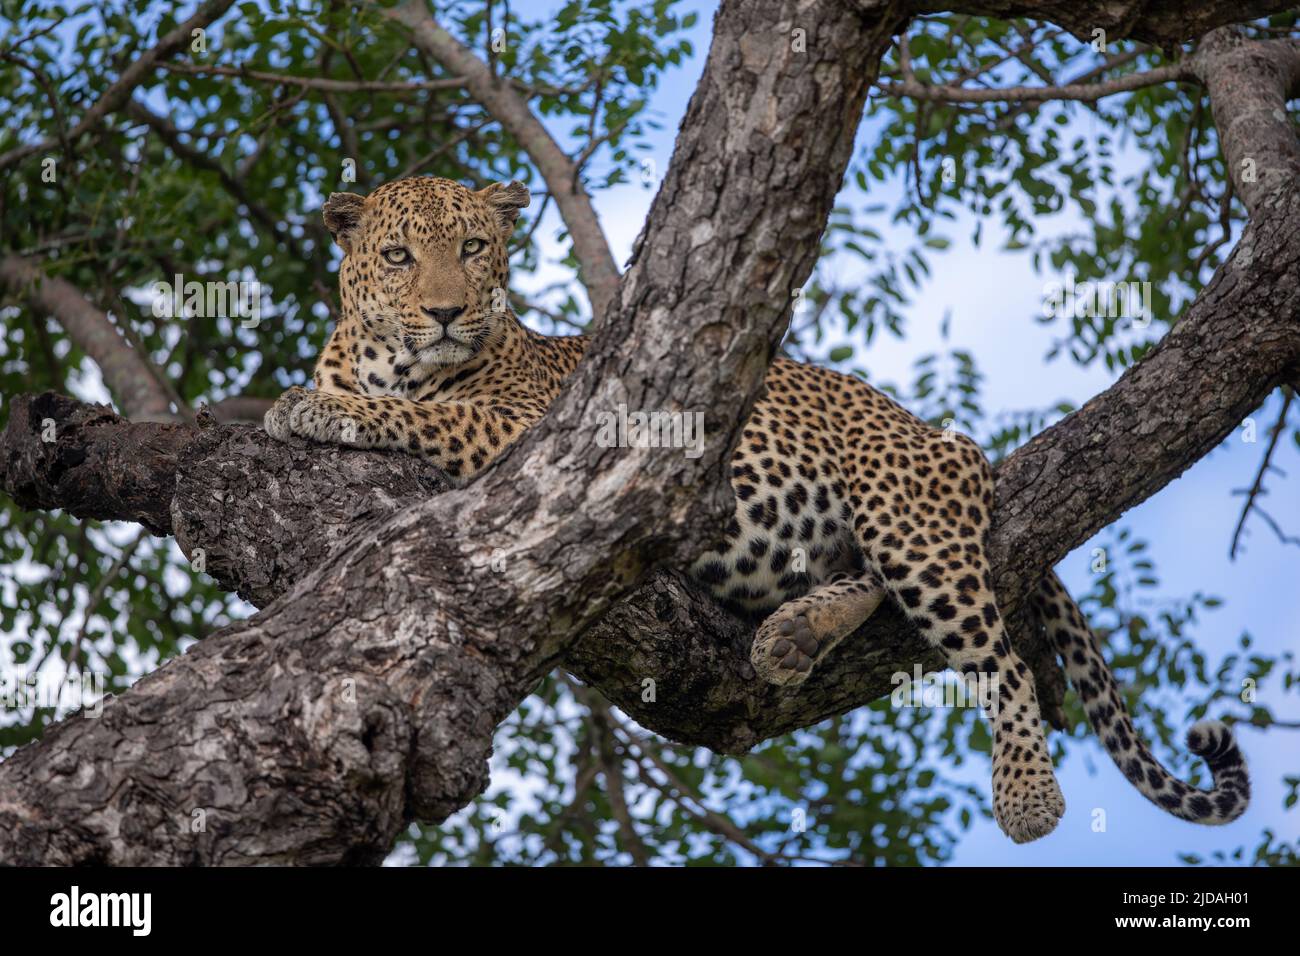 Un léopard, Panthera pardus, se trouve sur une branche d'arbre et regarde vers le bas Banque D'Images